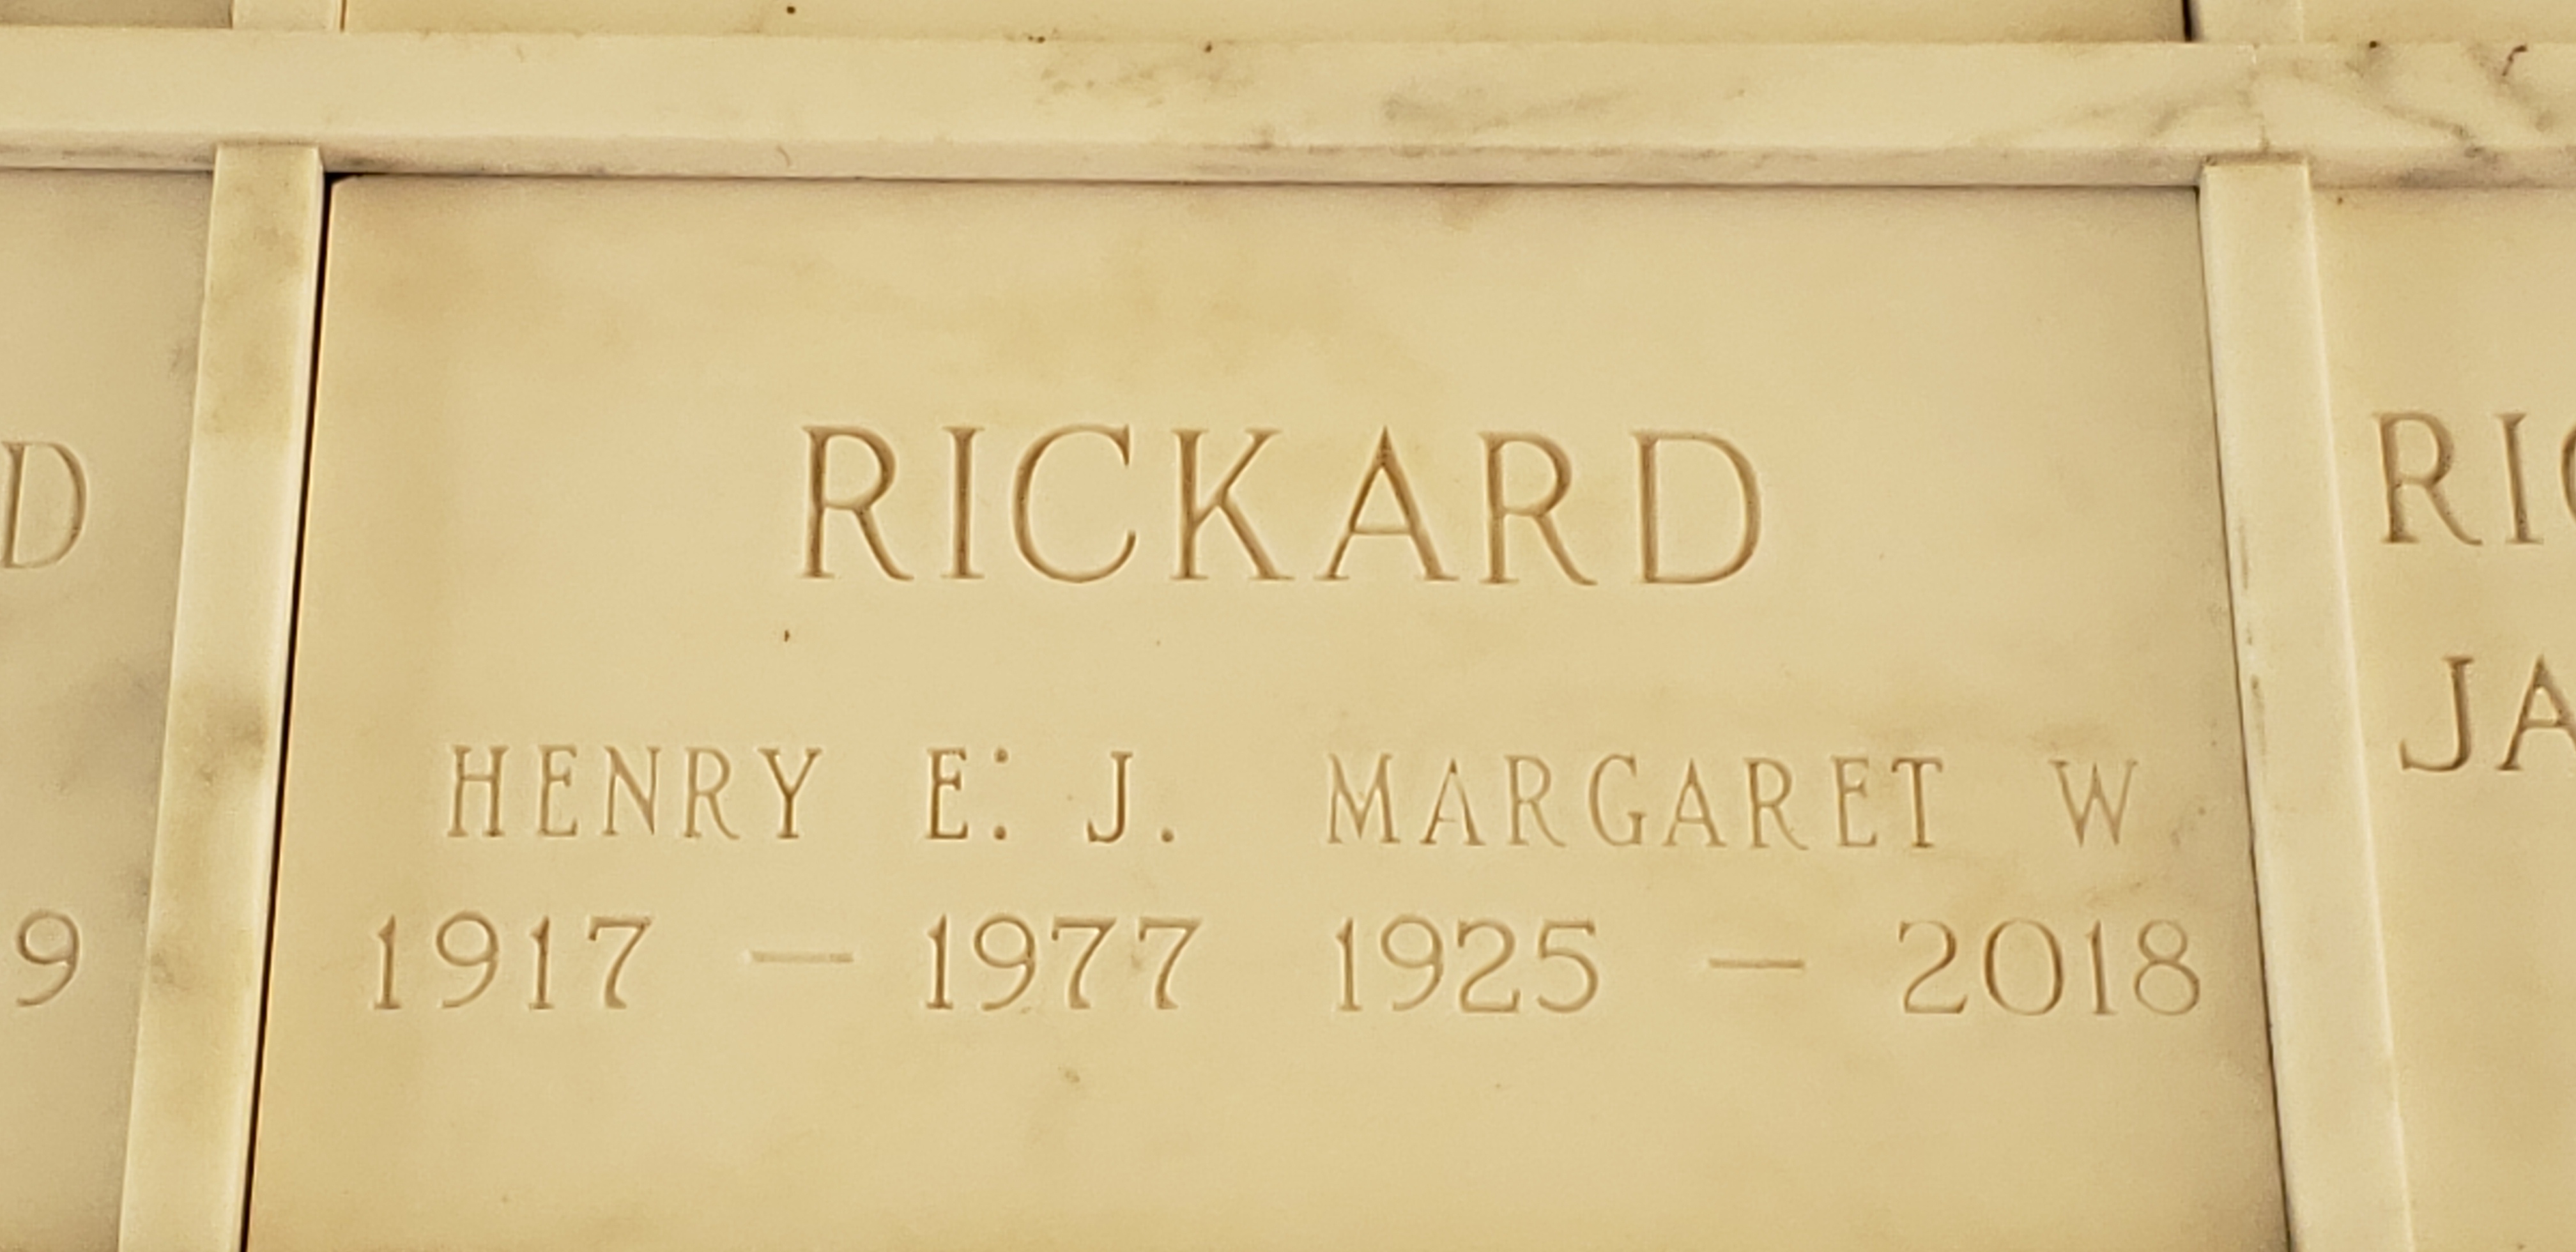 Margaret W Rickard